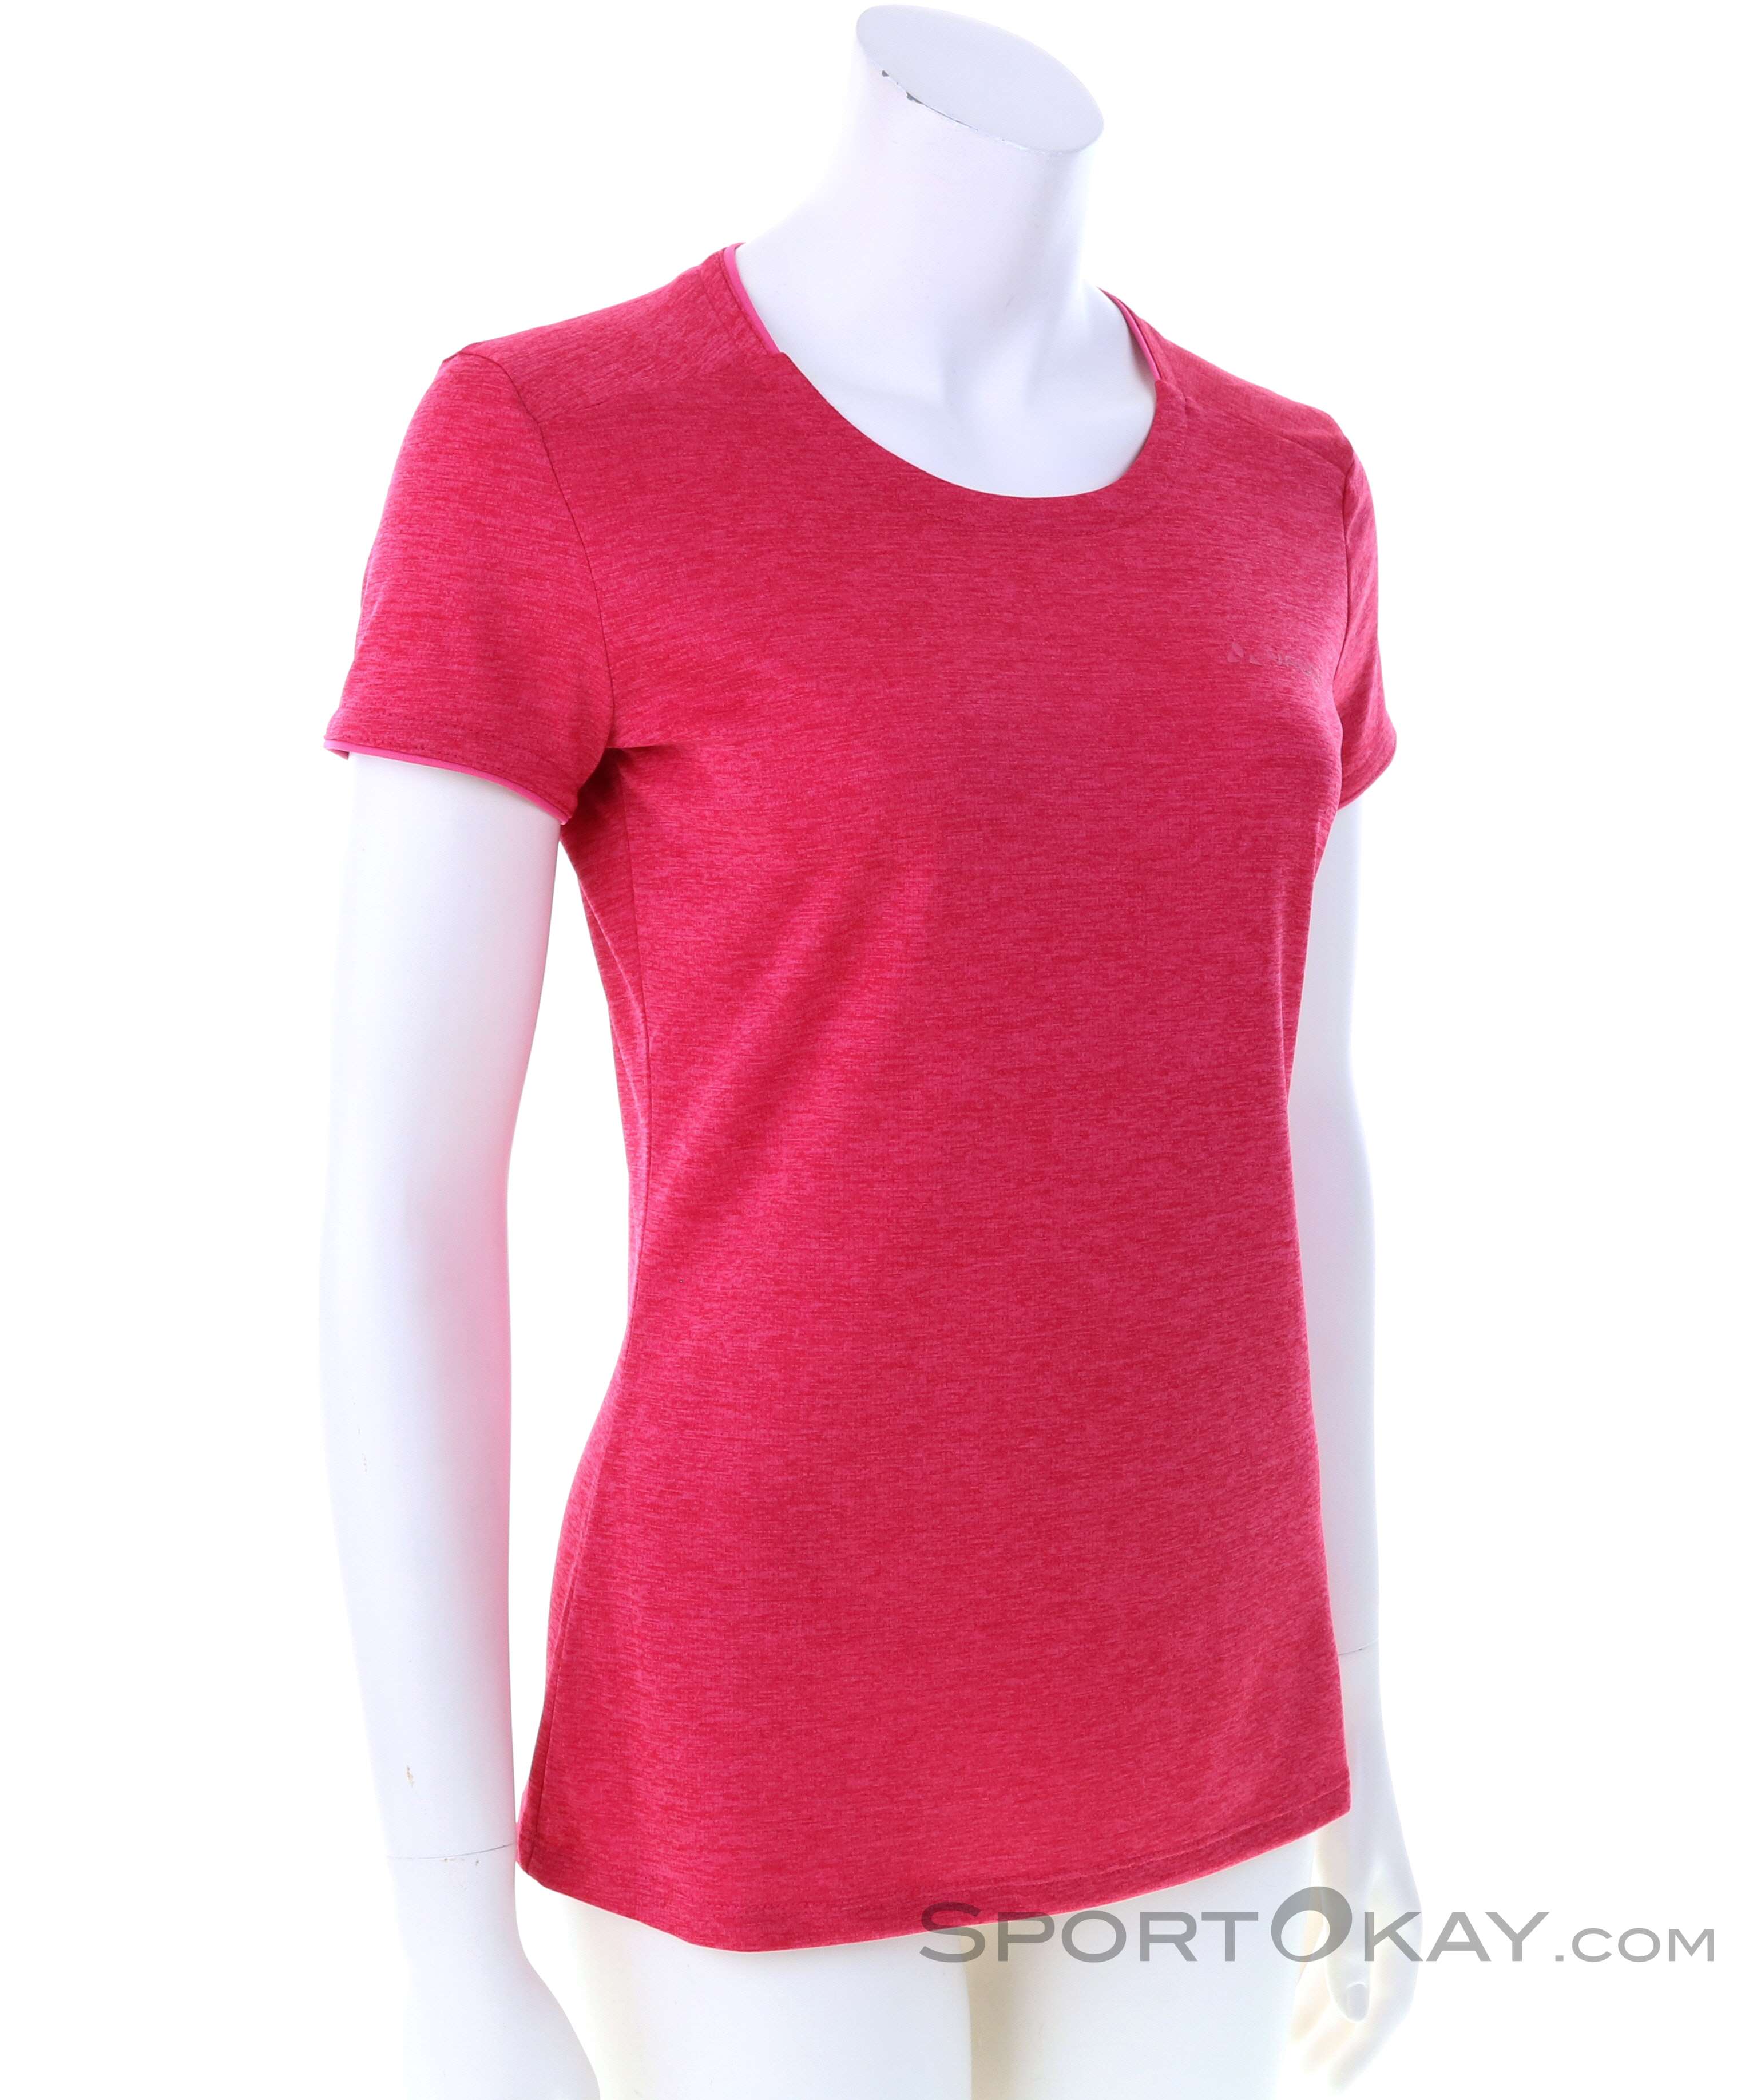 Outdoorbekleidung - Damas Outdoor T-Shirt - Essential Hemden Shirts - & Alle - Vaude